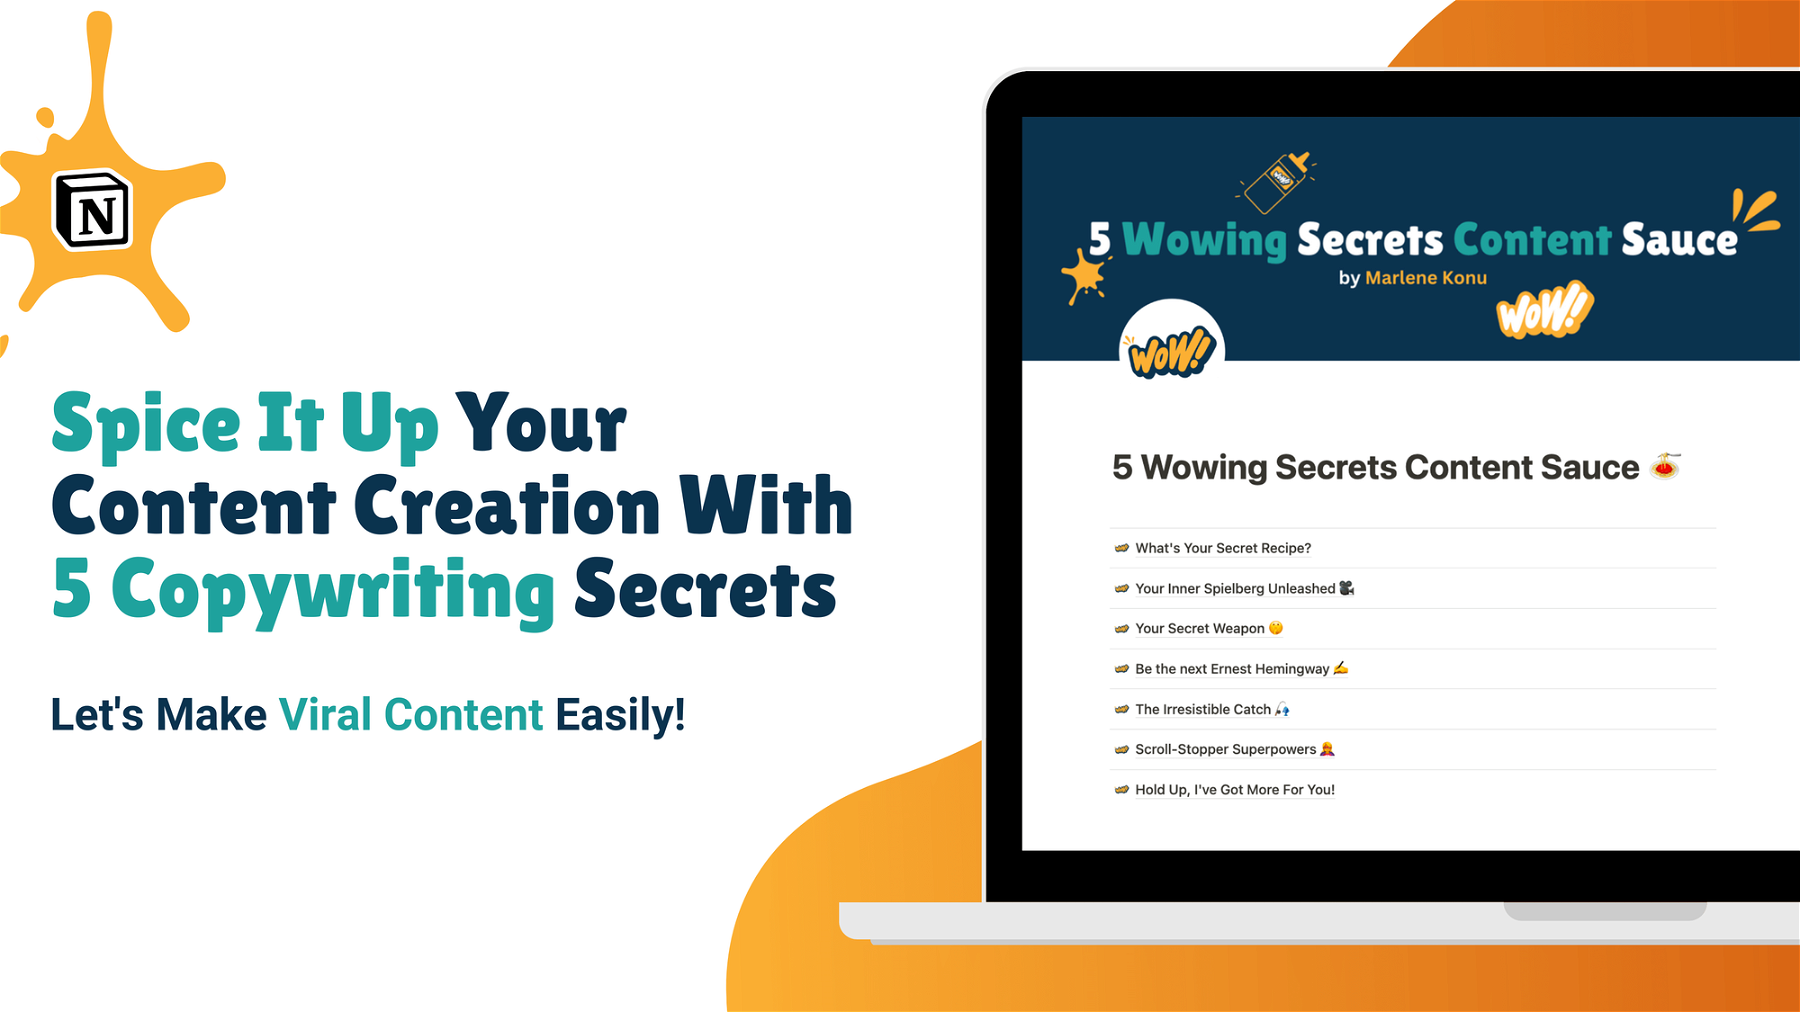 5 Wowing Secrets Content Sauce 🍝